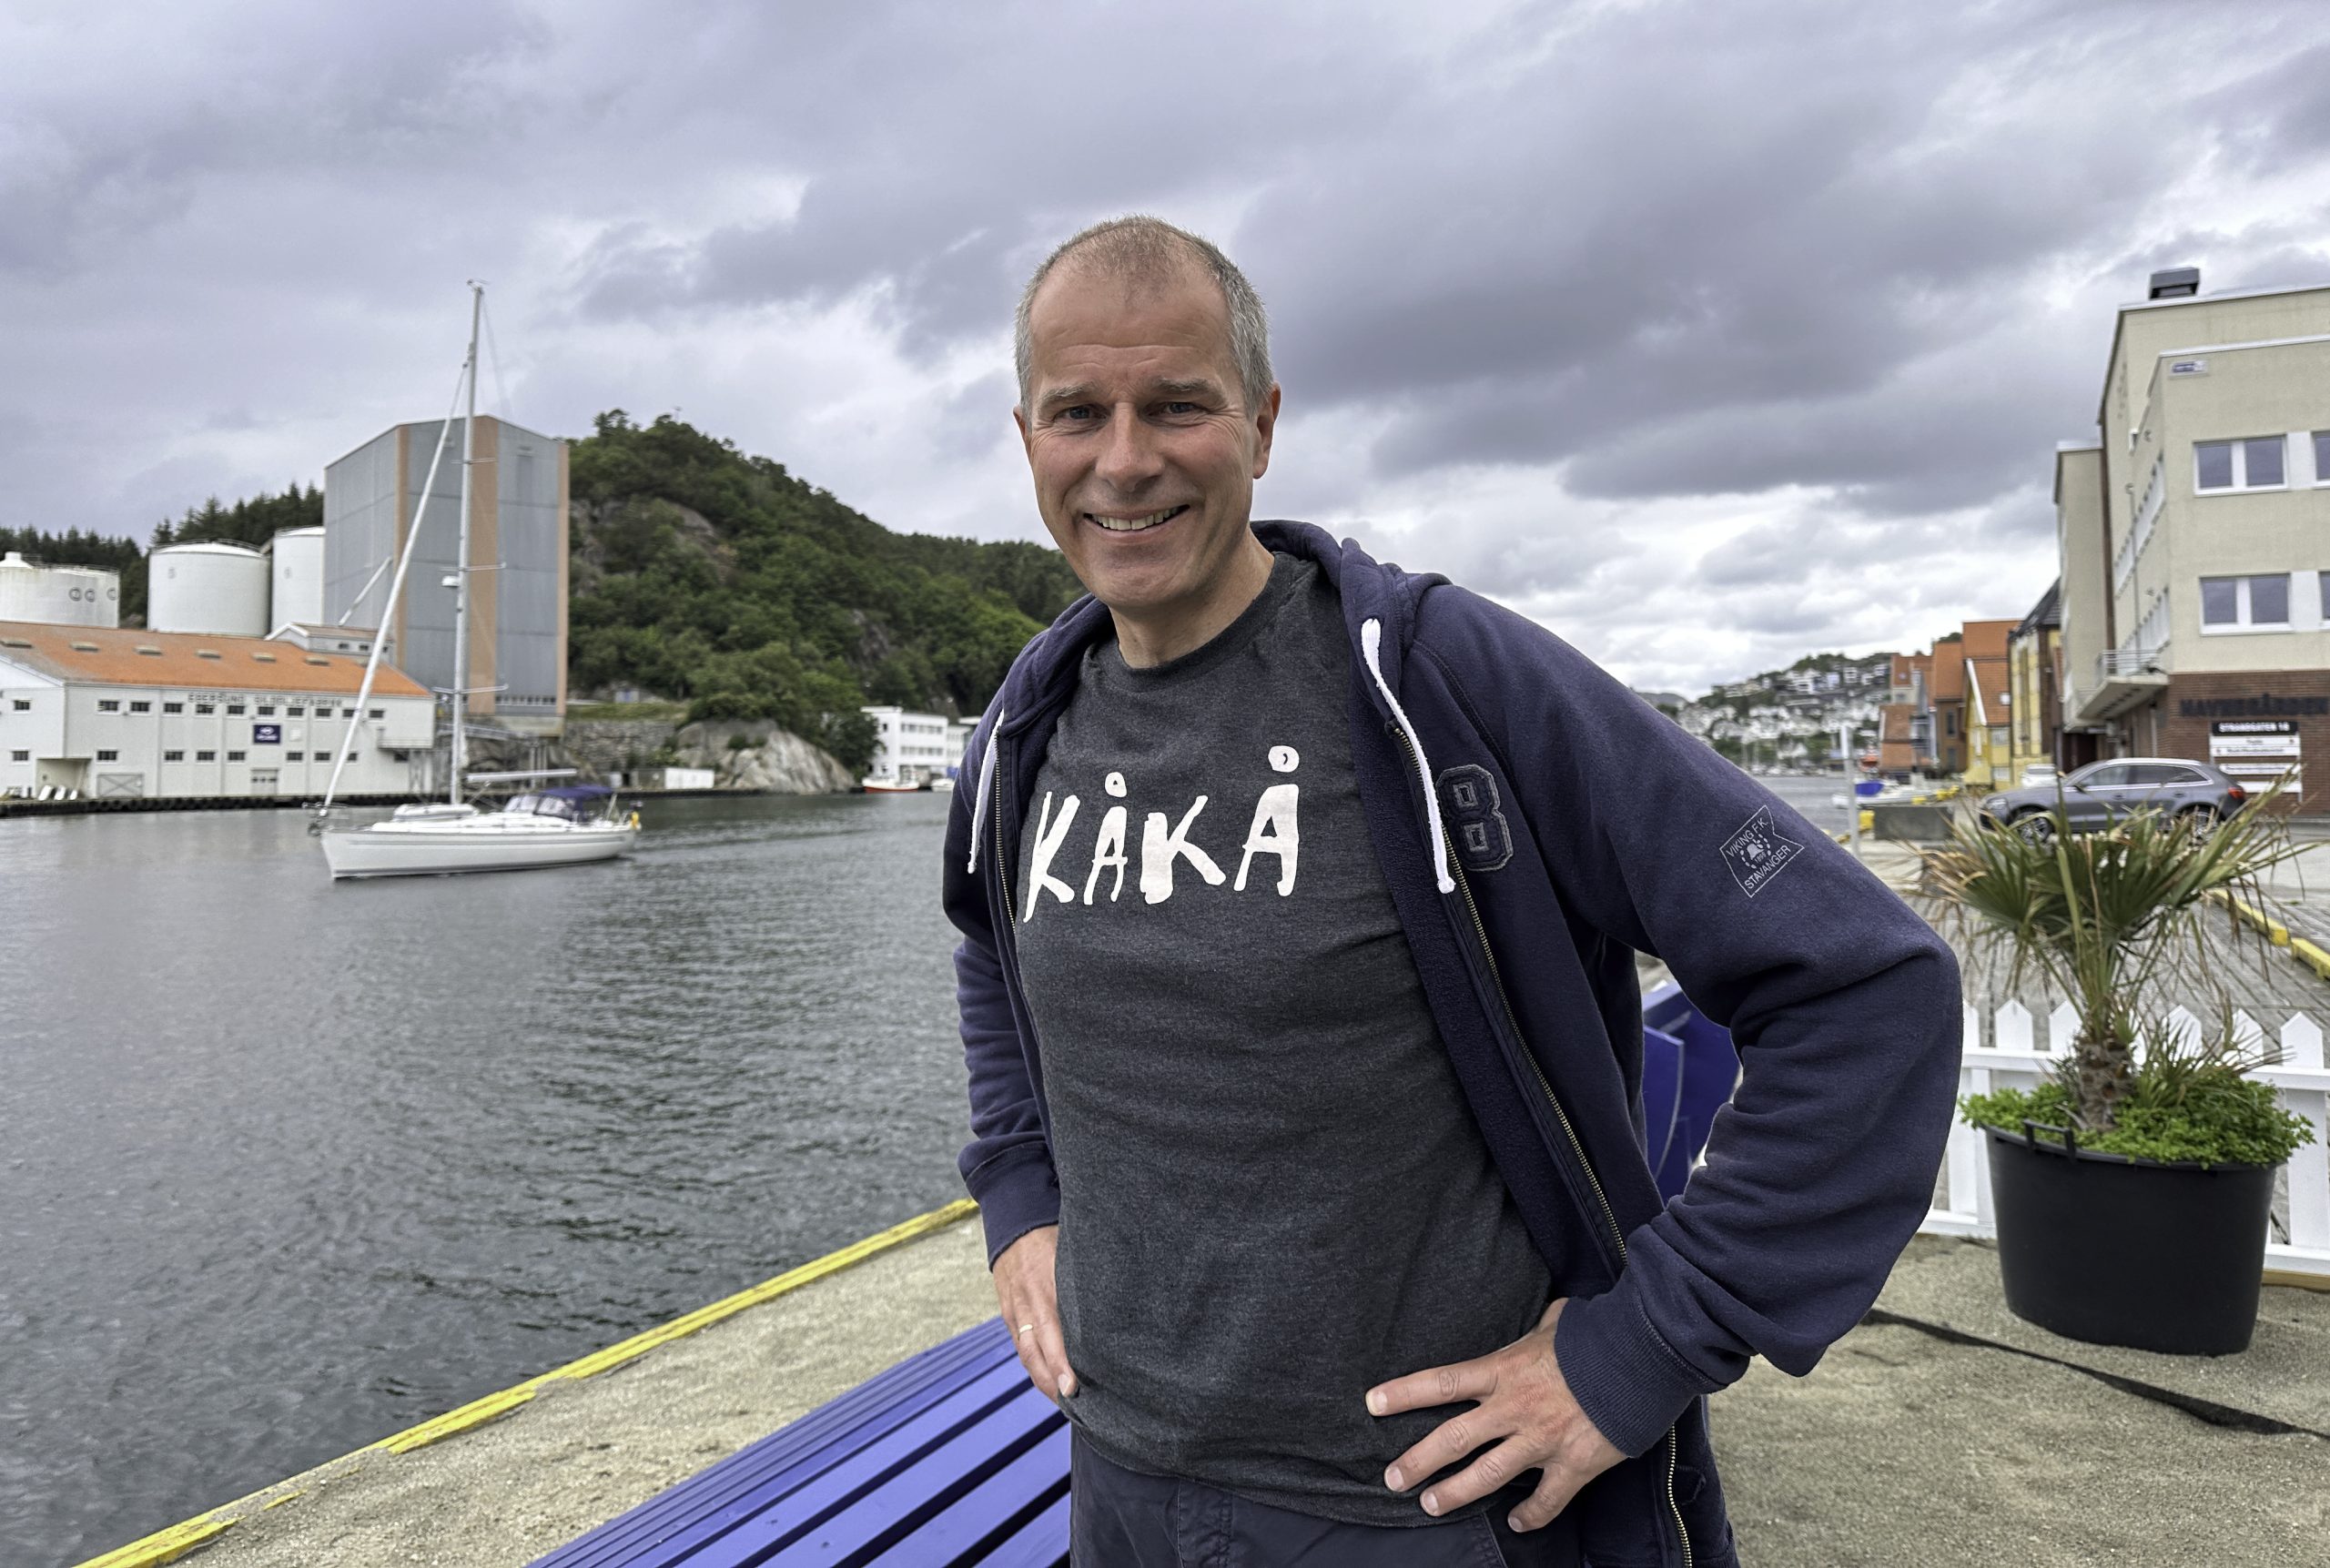 Cornelius Middelthon står på Bredbenken strand i Egersund. Han har på seg en blågrå t-skjorte med teksten KÅKÅ. I bakgrunnen kjører en seilbåt.